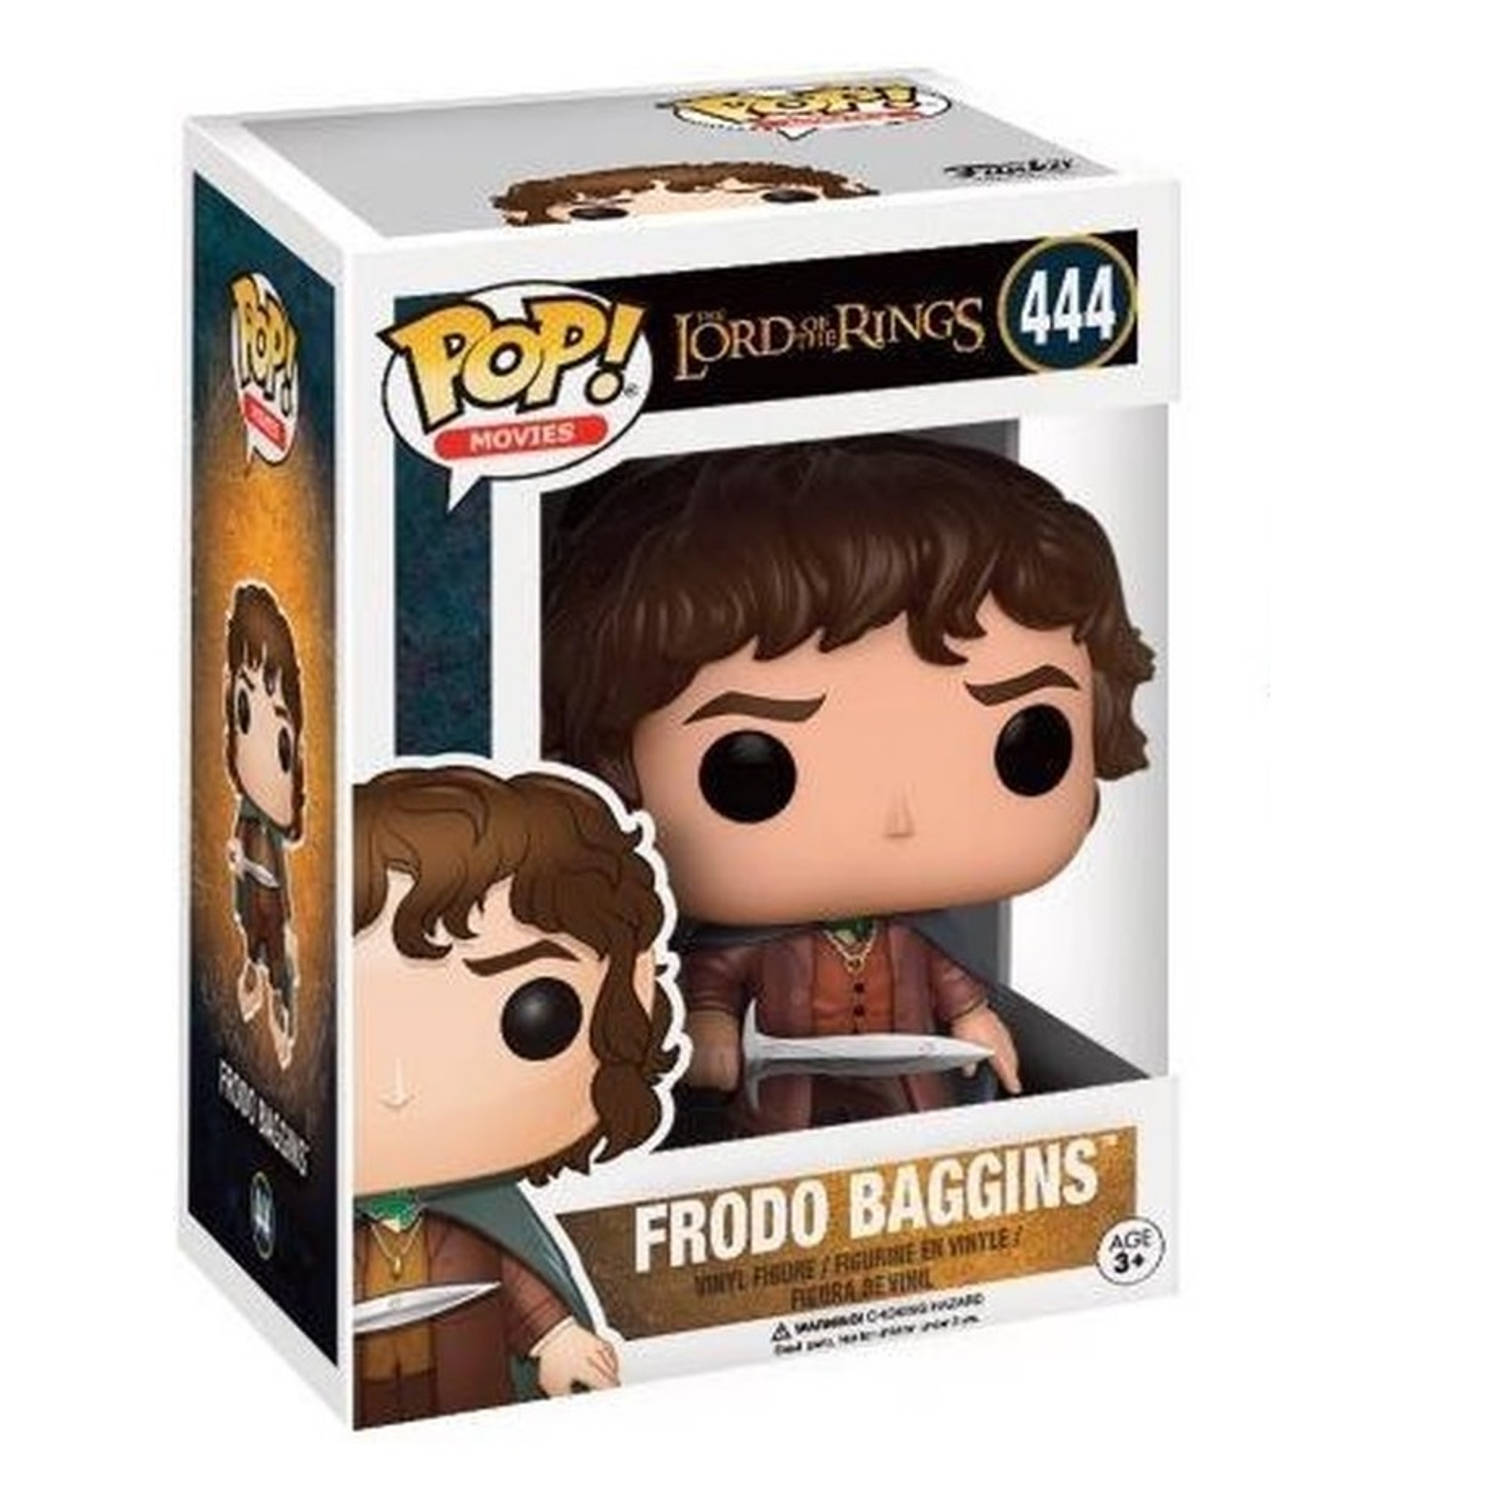 Lord Of The Rings Frodo Baggins Pop! Vinyl Figure